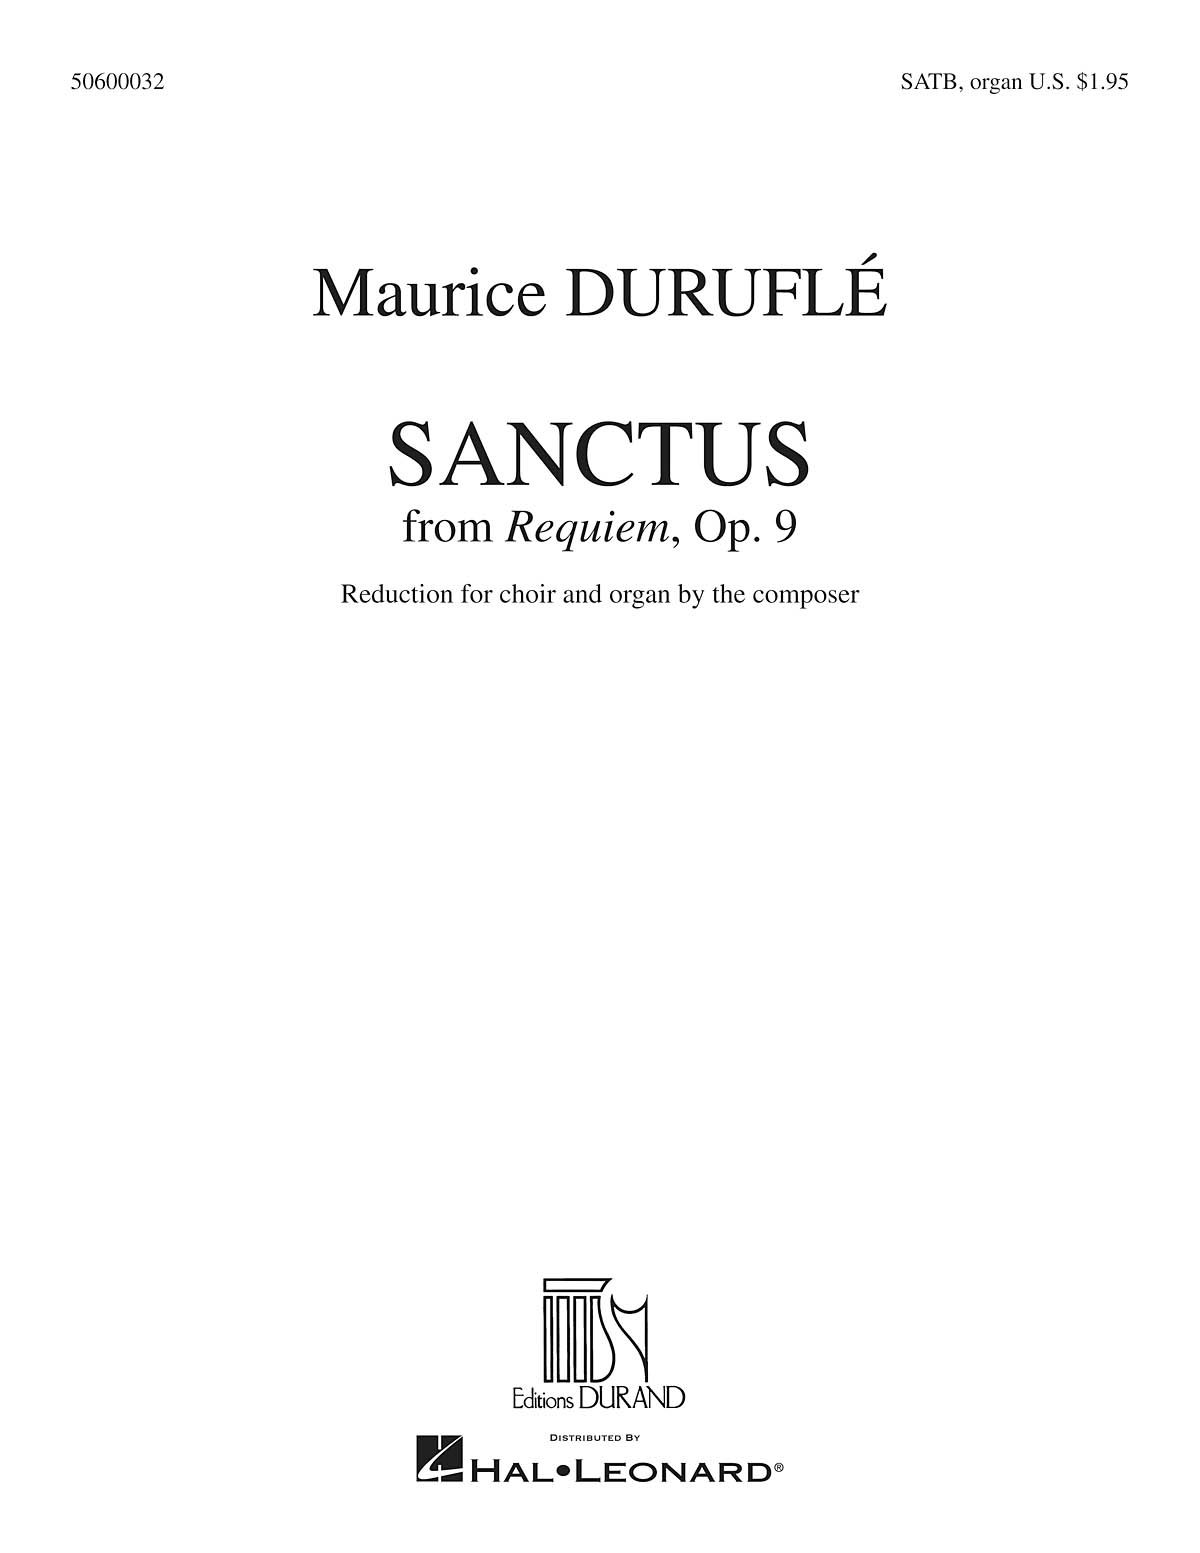 Sanctus(from Requiem)